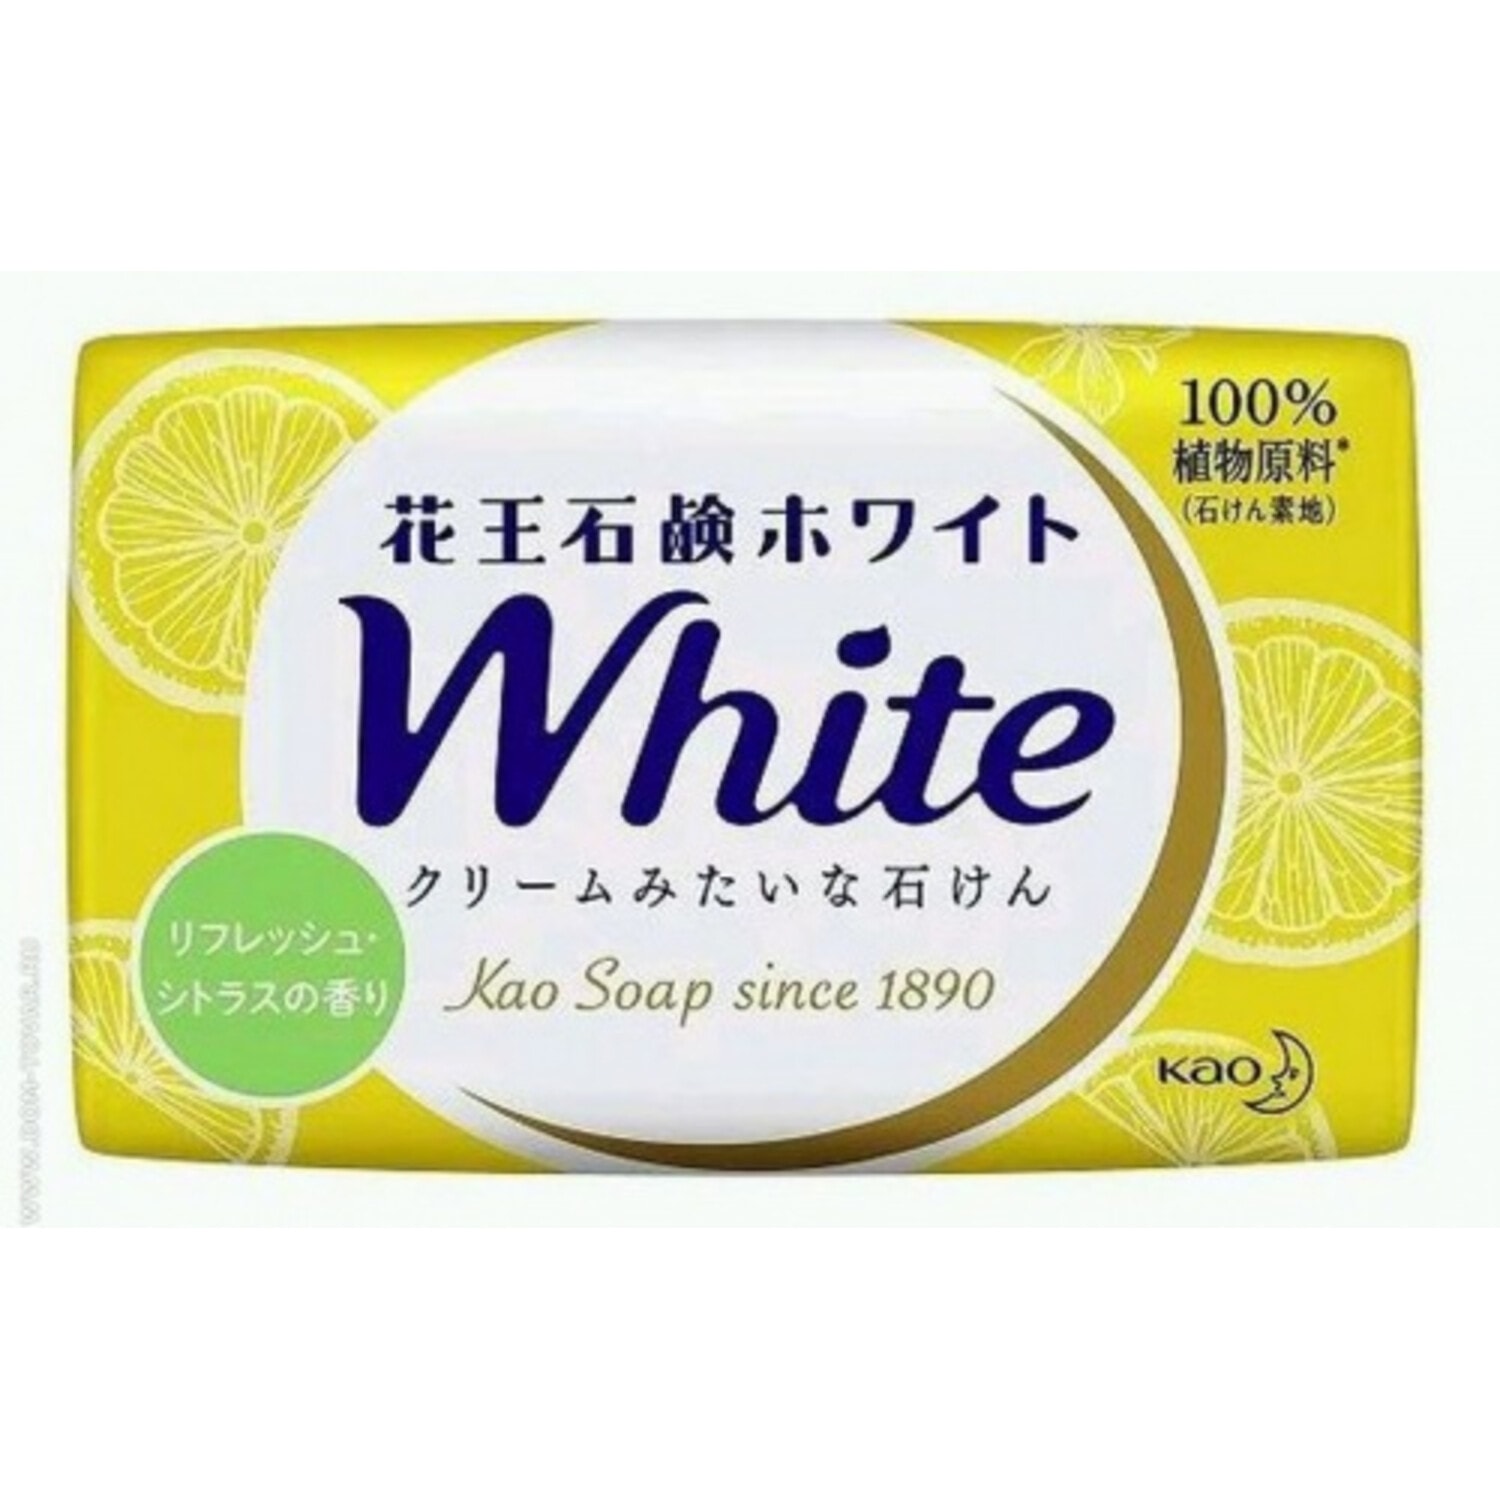 KAO "White Citrus" Кусковое крем-мыло с ароматом цитрусовых фруктов, 85г. / 310354